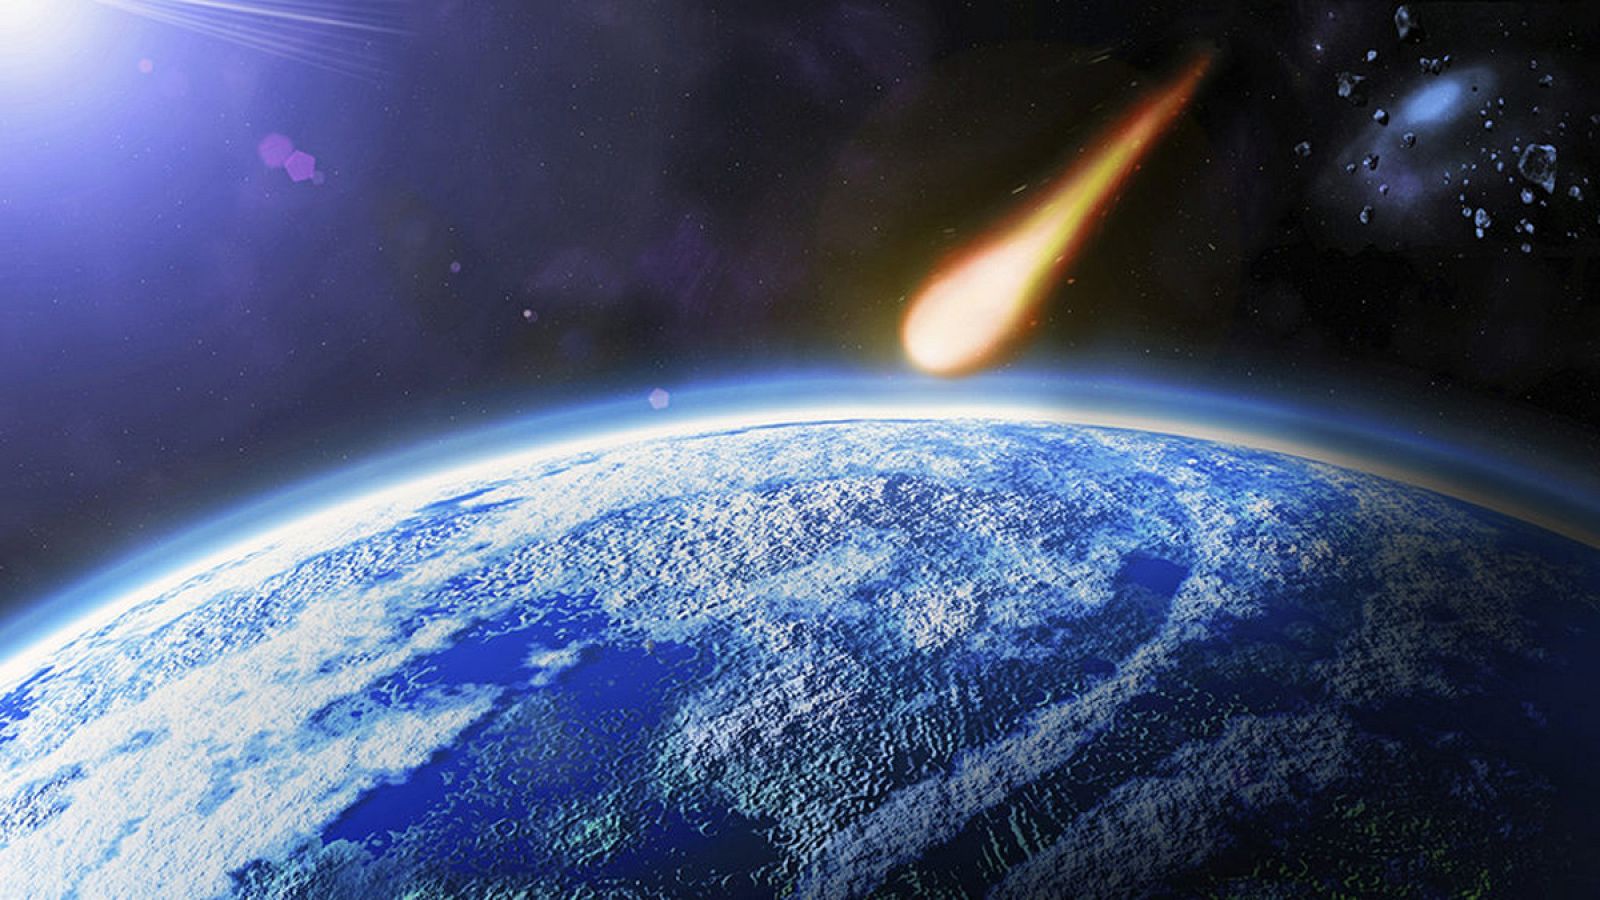 Ningún asteroide impactará contra la Tierra en los próximos cien años, según la NASA